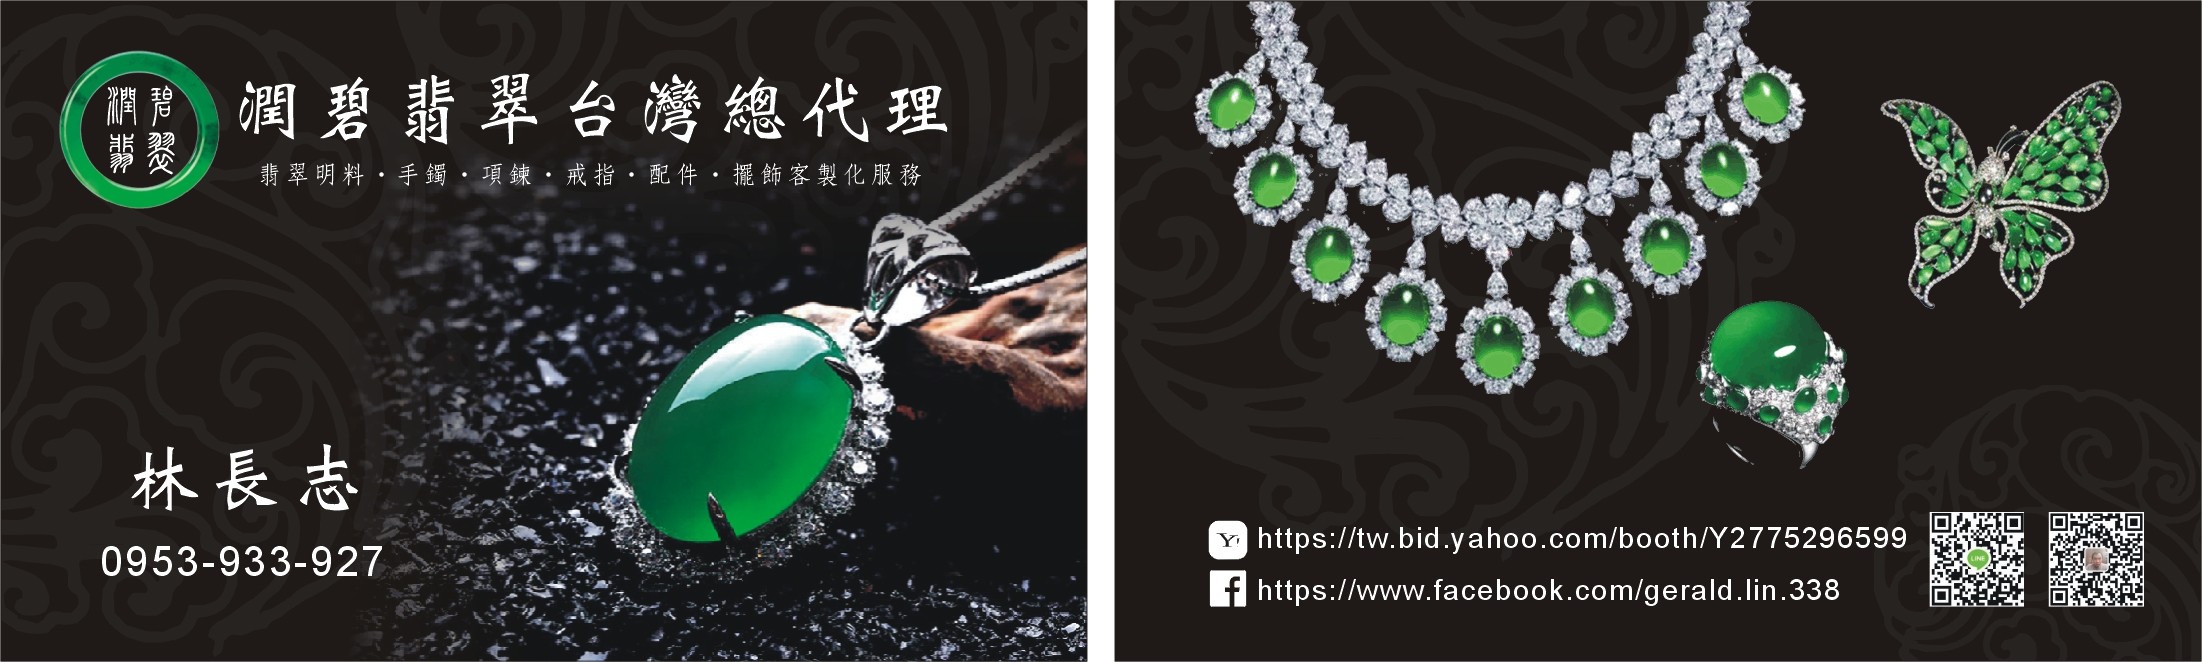 林長志-潔朗國際珠寶的主播照片